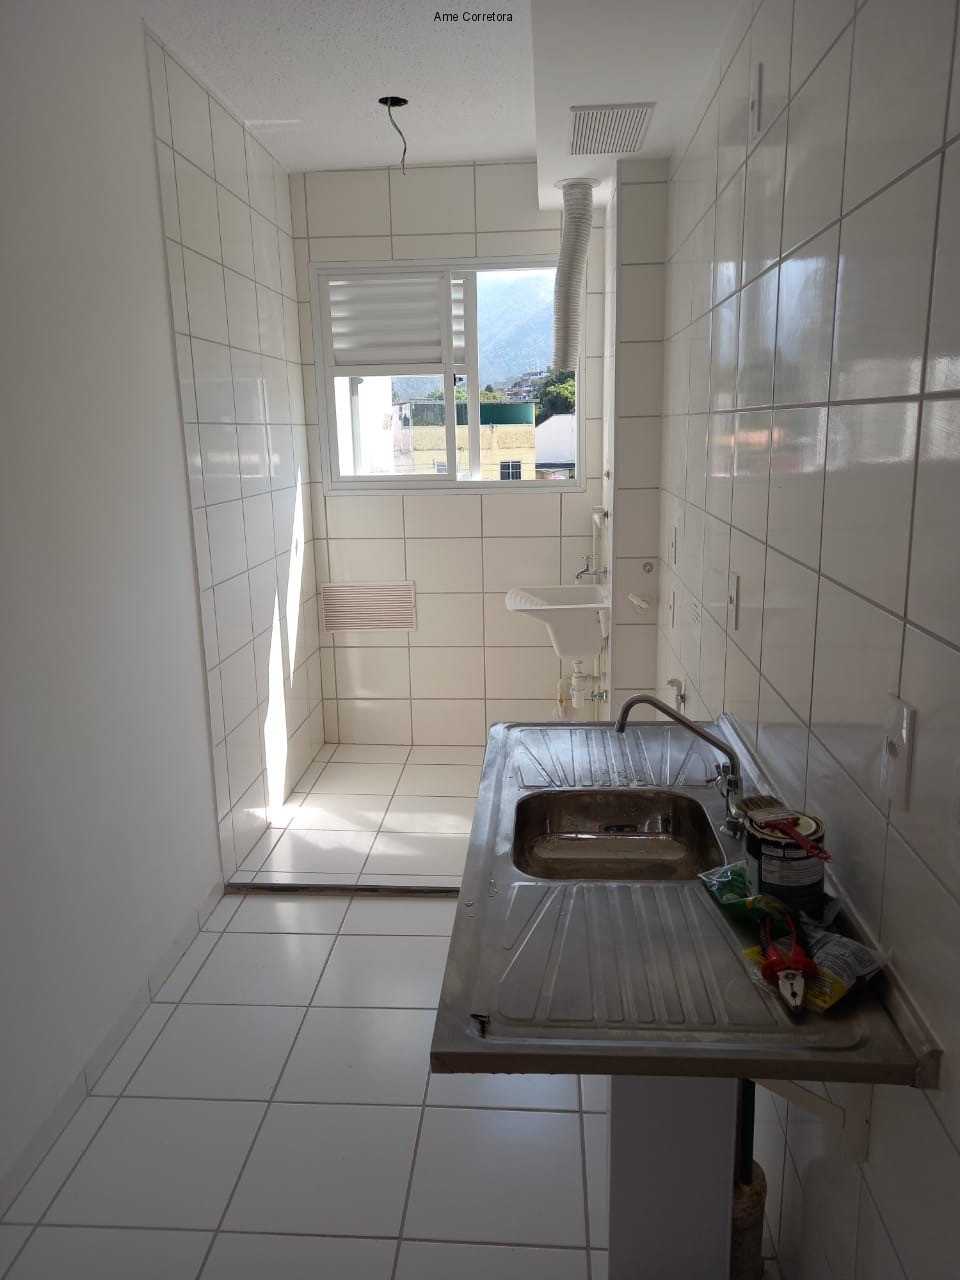 FOTO 16 - Apartamento 2 quartos à venda Rio de Janeiro,RJ - R$ 270.000 - AP00389 - 17